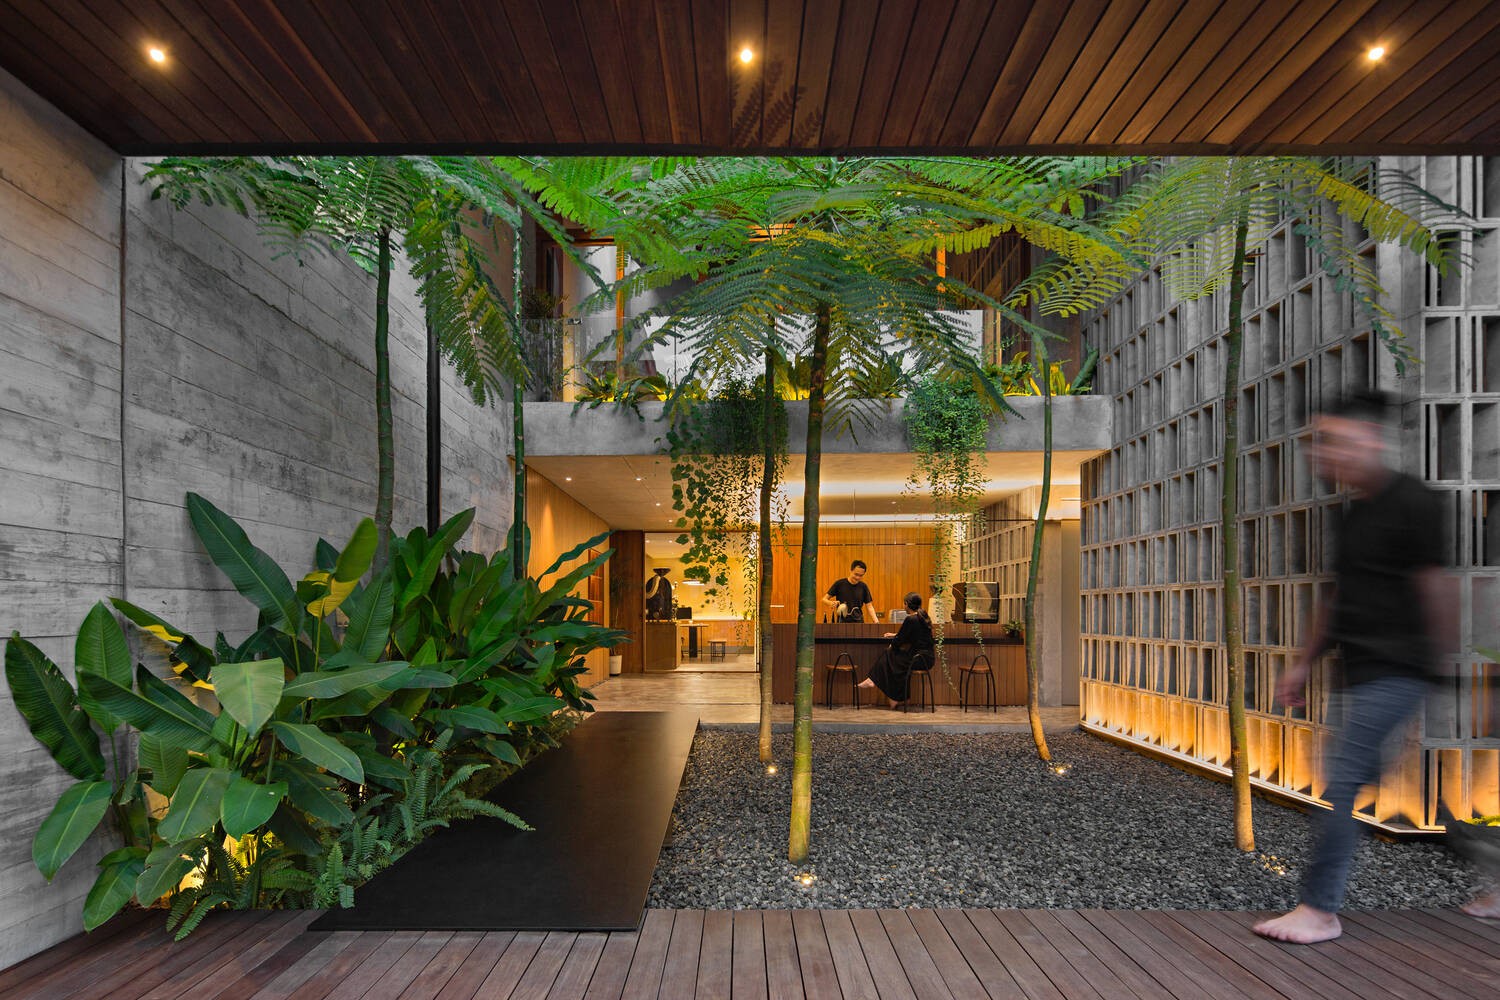 
Khoảng sân trải sỏi đá, trồng cây xanh, đã thể hiện được ý muốn mang lại cảm giác ngoài trời cho không gian trong nhà của nhóm kiến trúc sư tạo nên công trình này
